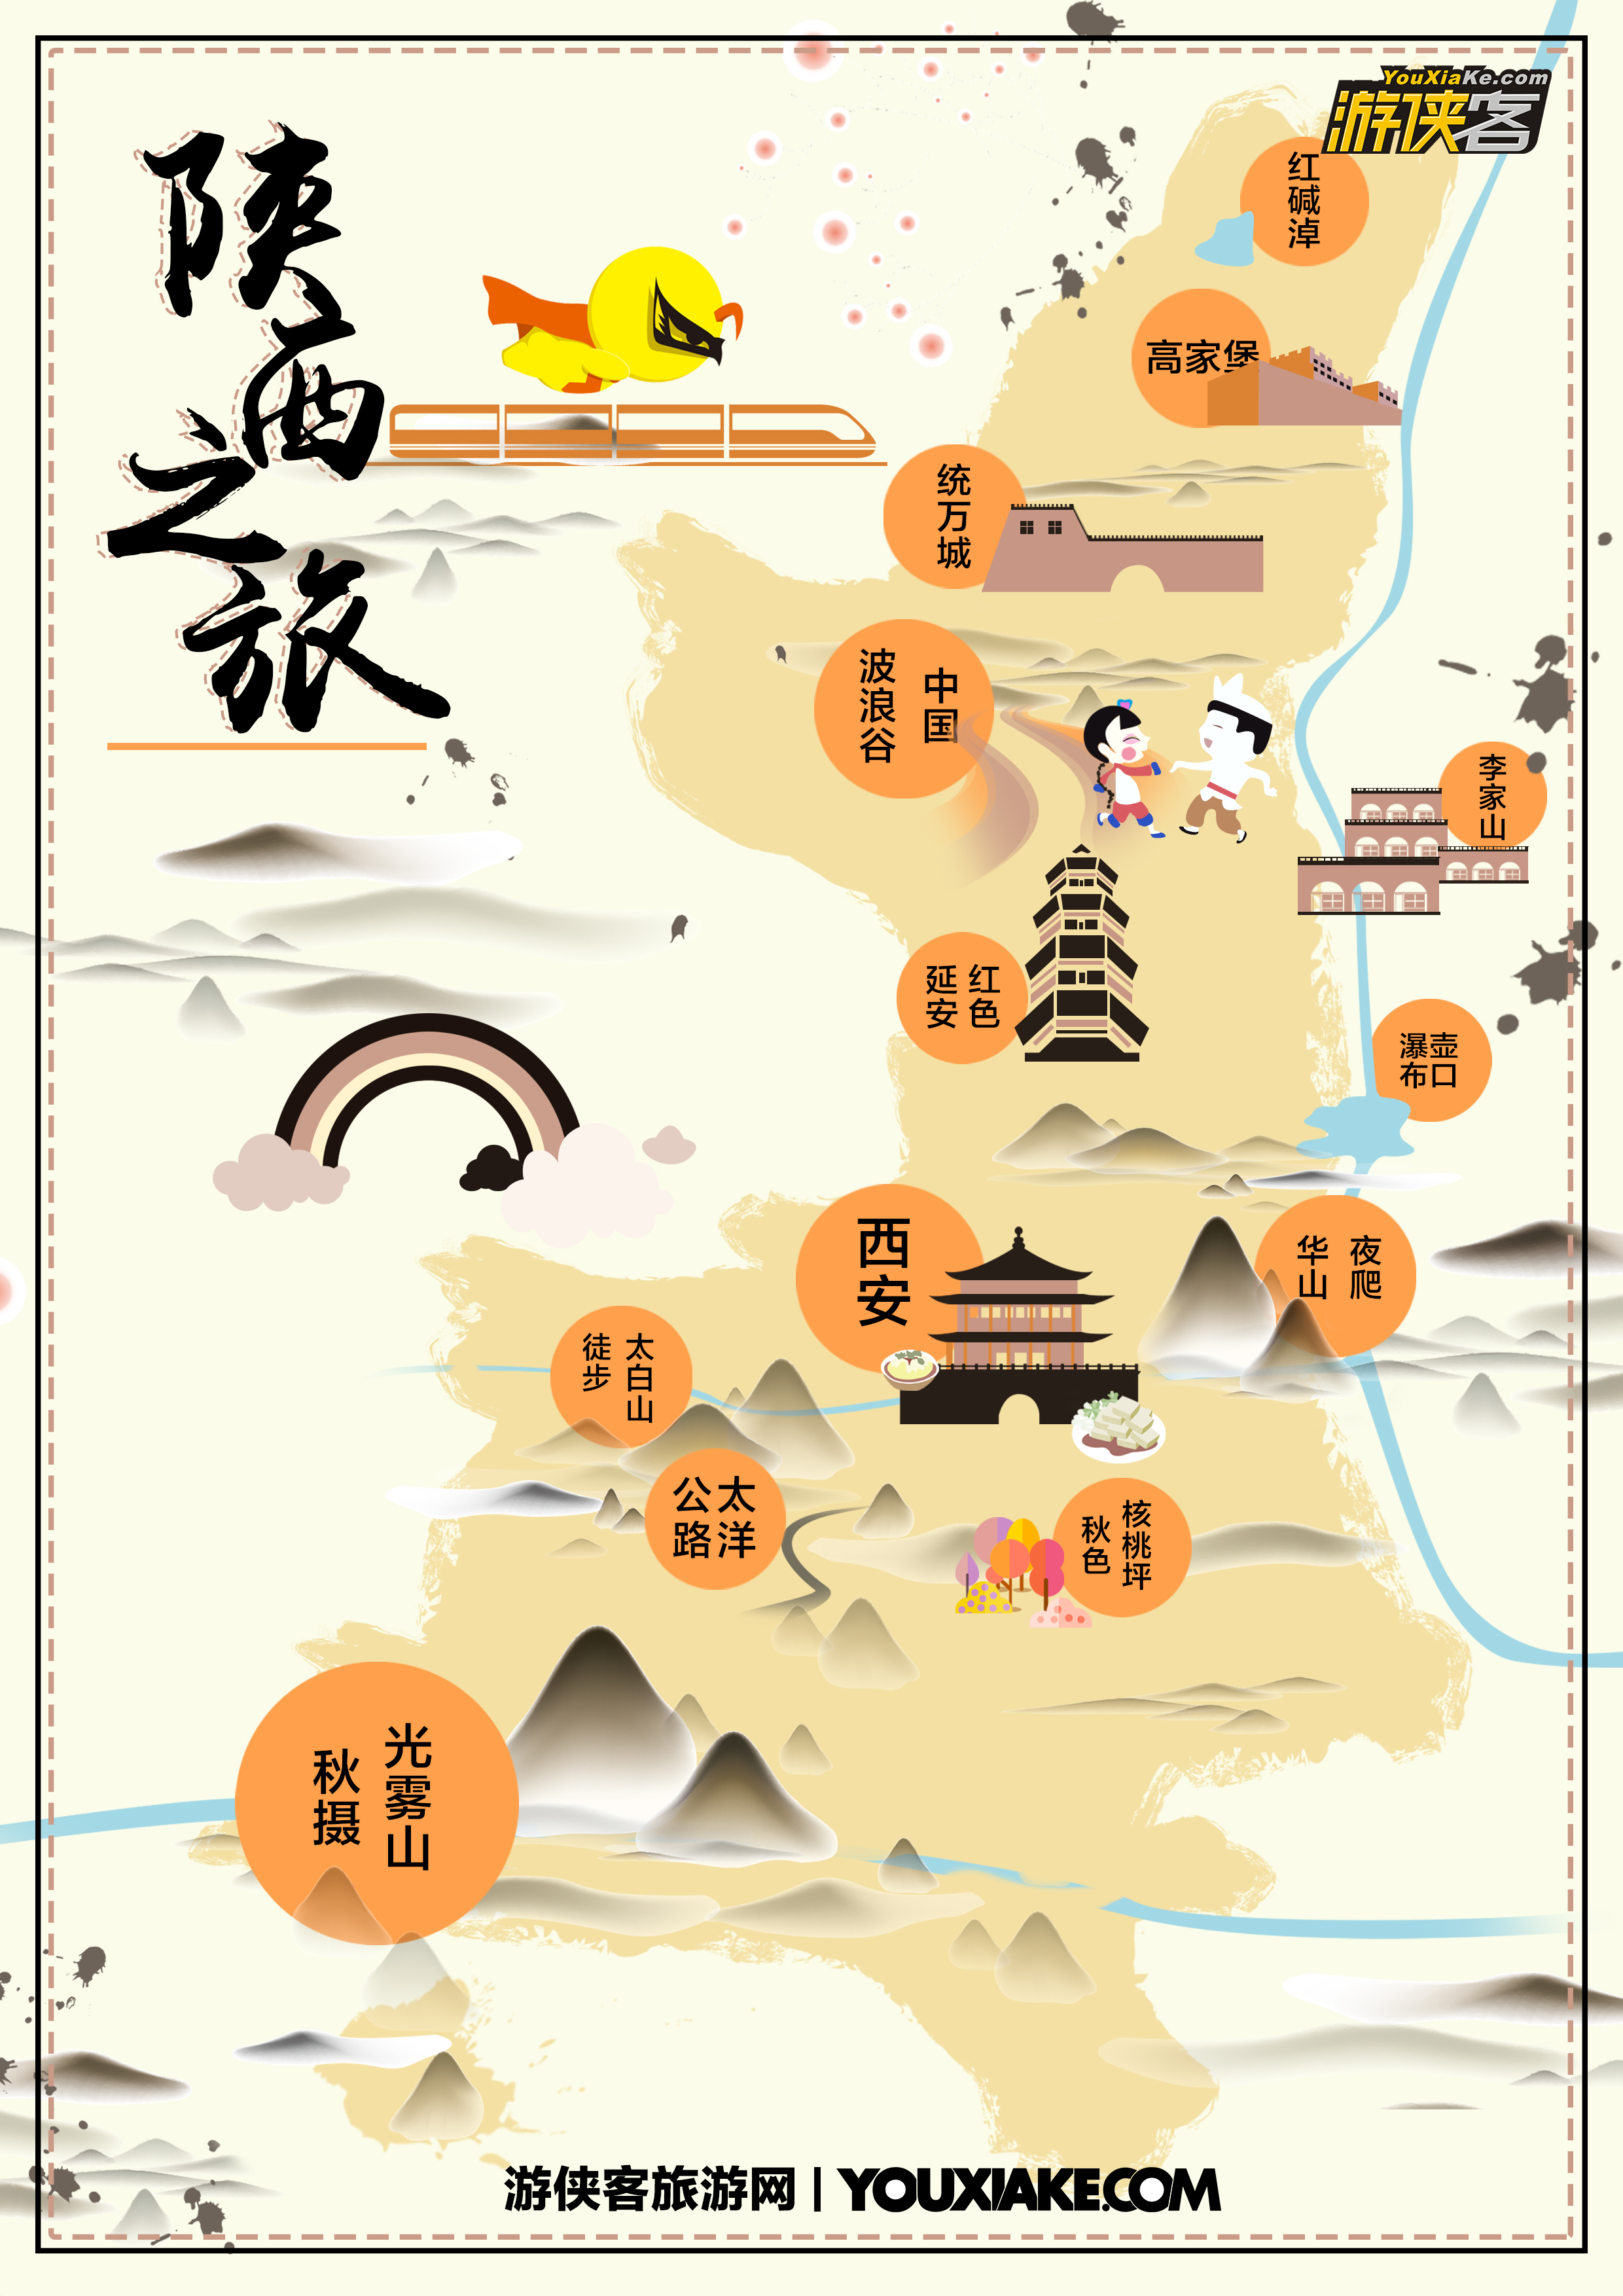 陕西之旅地图.jpg